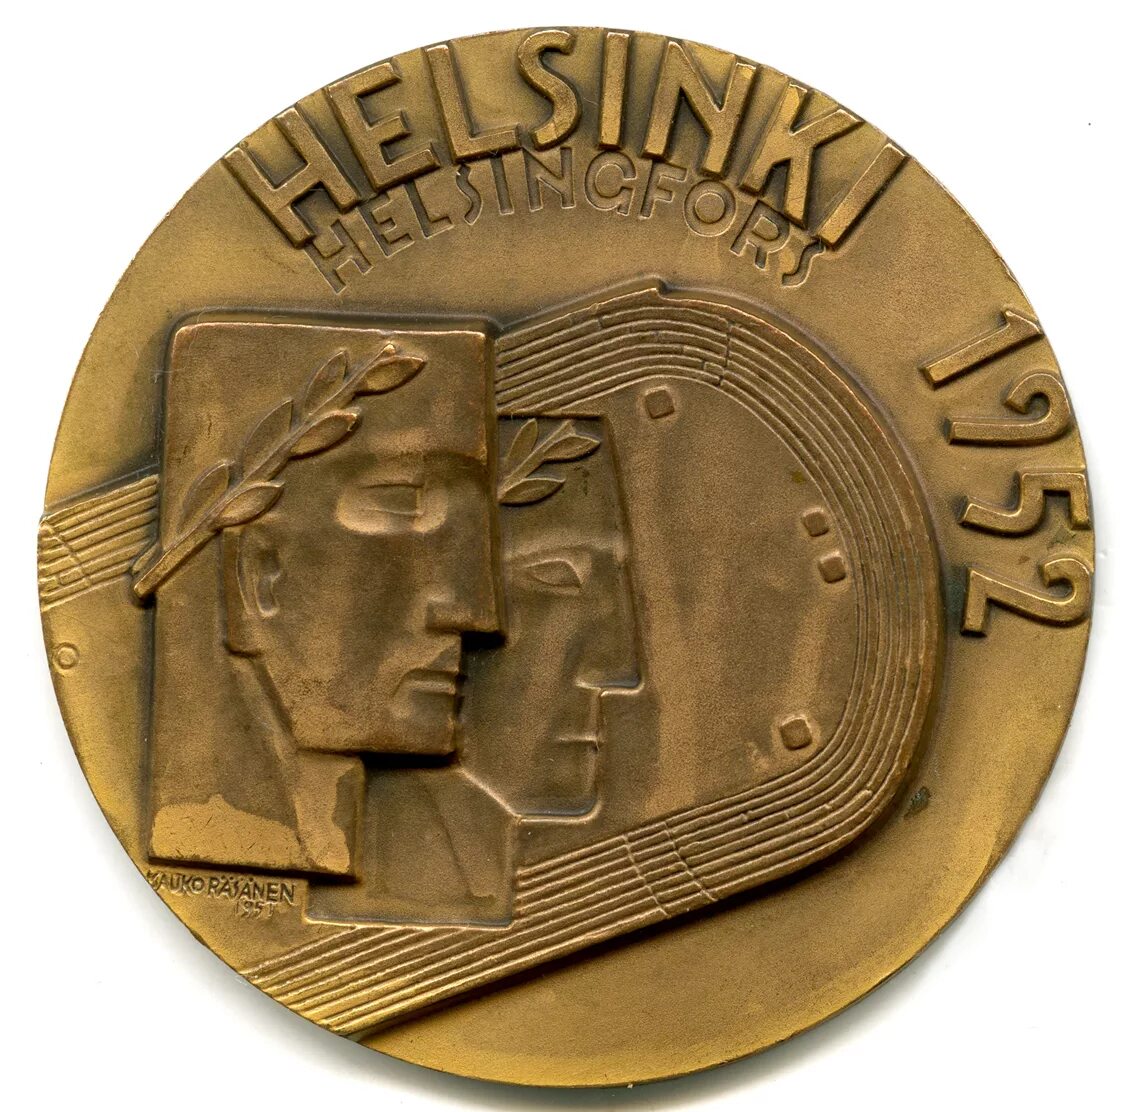 Медаль Хельсинки 1952. Медали СССР Хельсинки 1952. Олимпийские игры 1952 года в Хельсинки медали. Олимпийская медаль 1952. Сделать памятную медаль